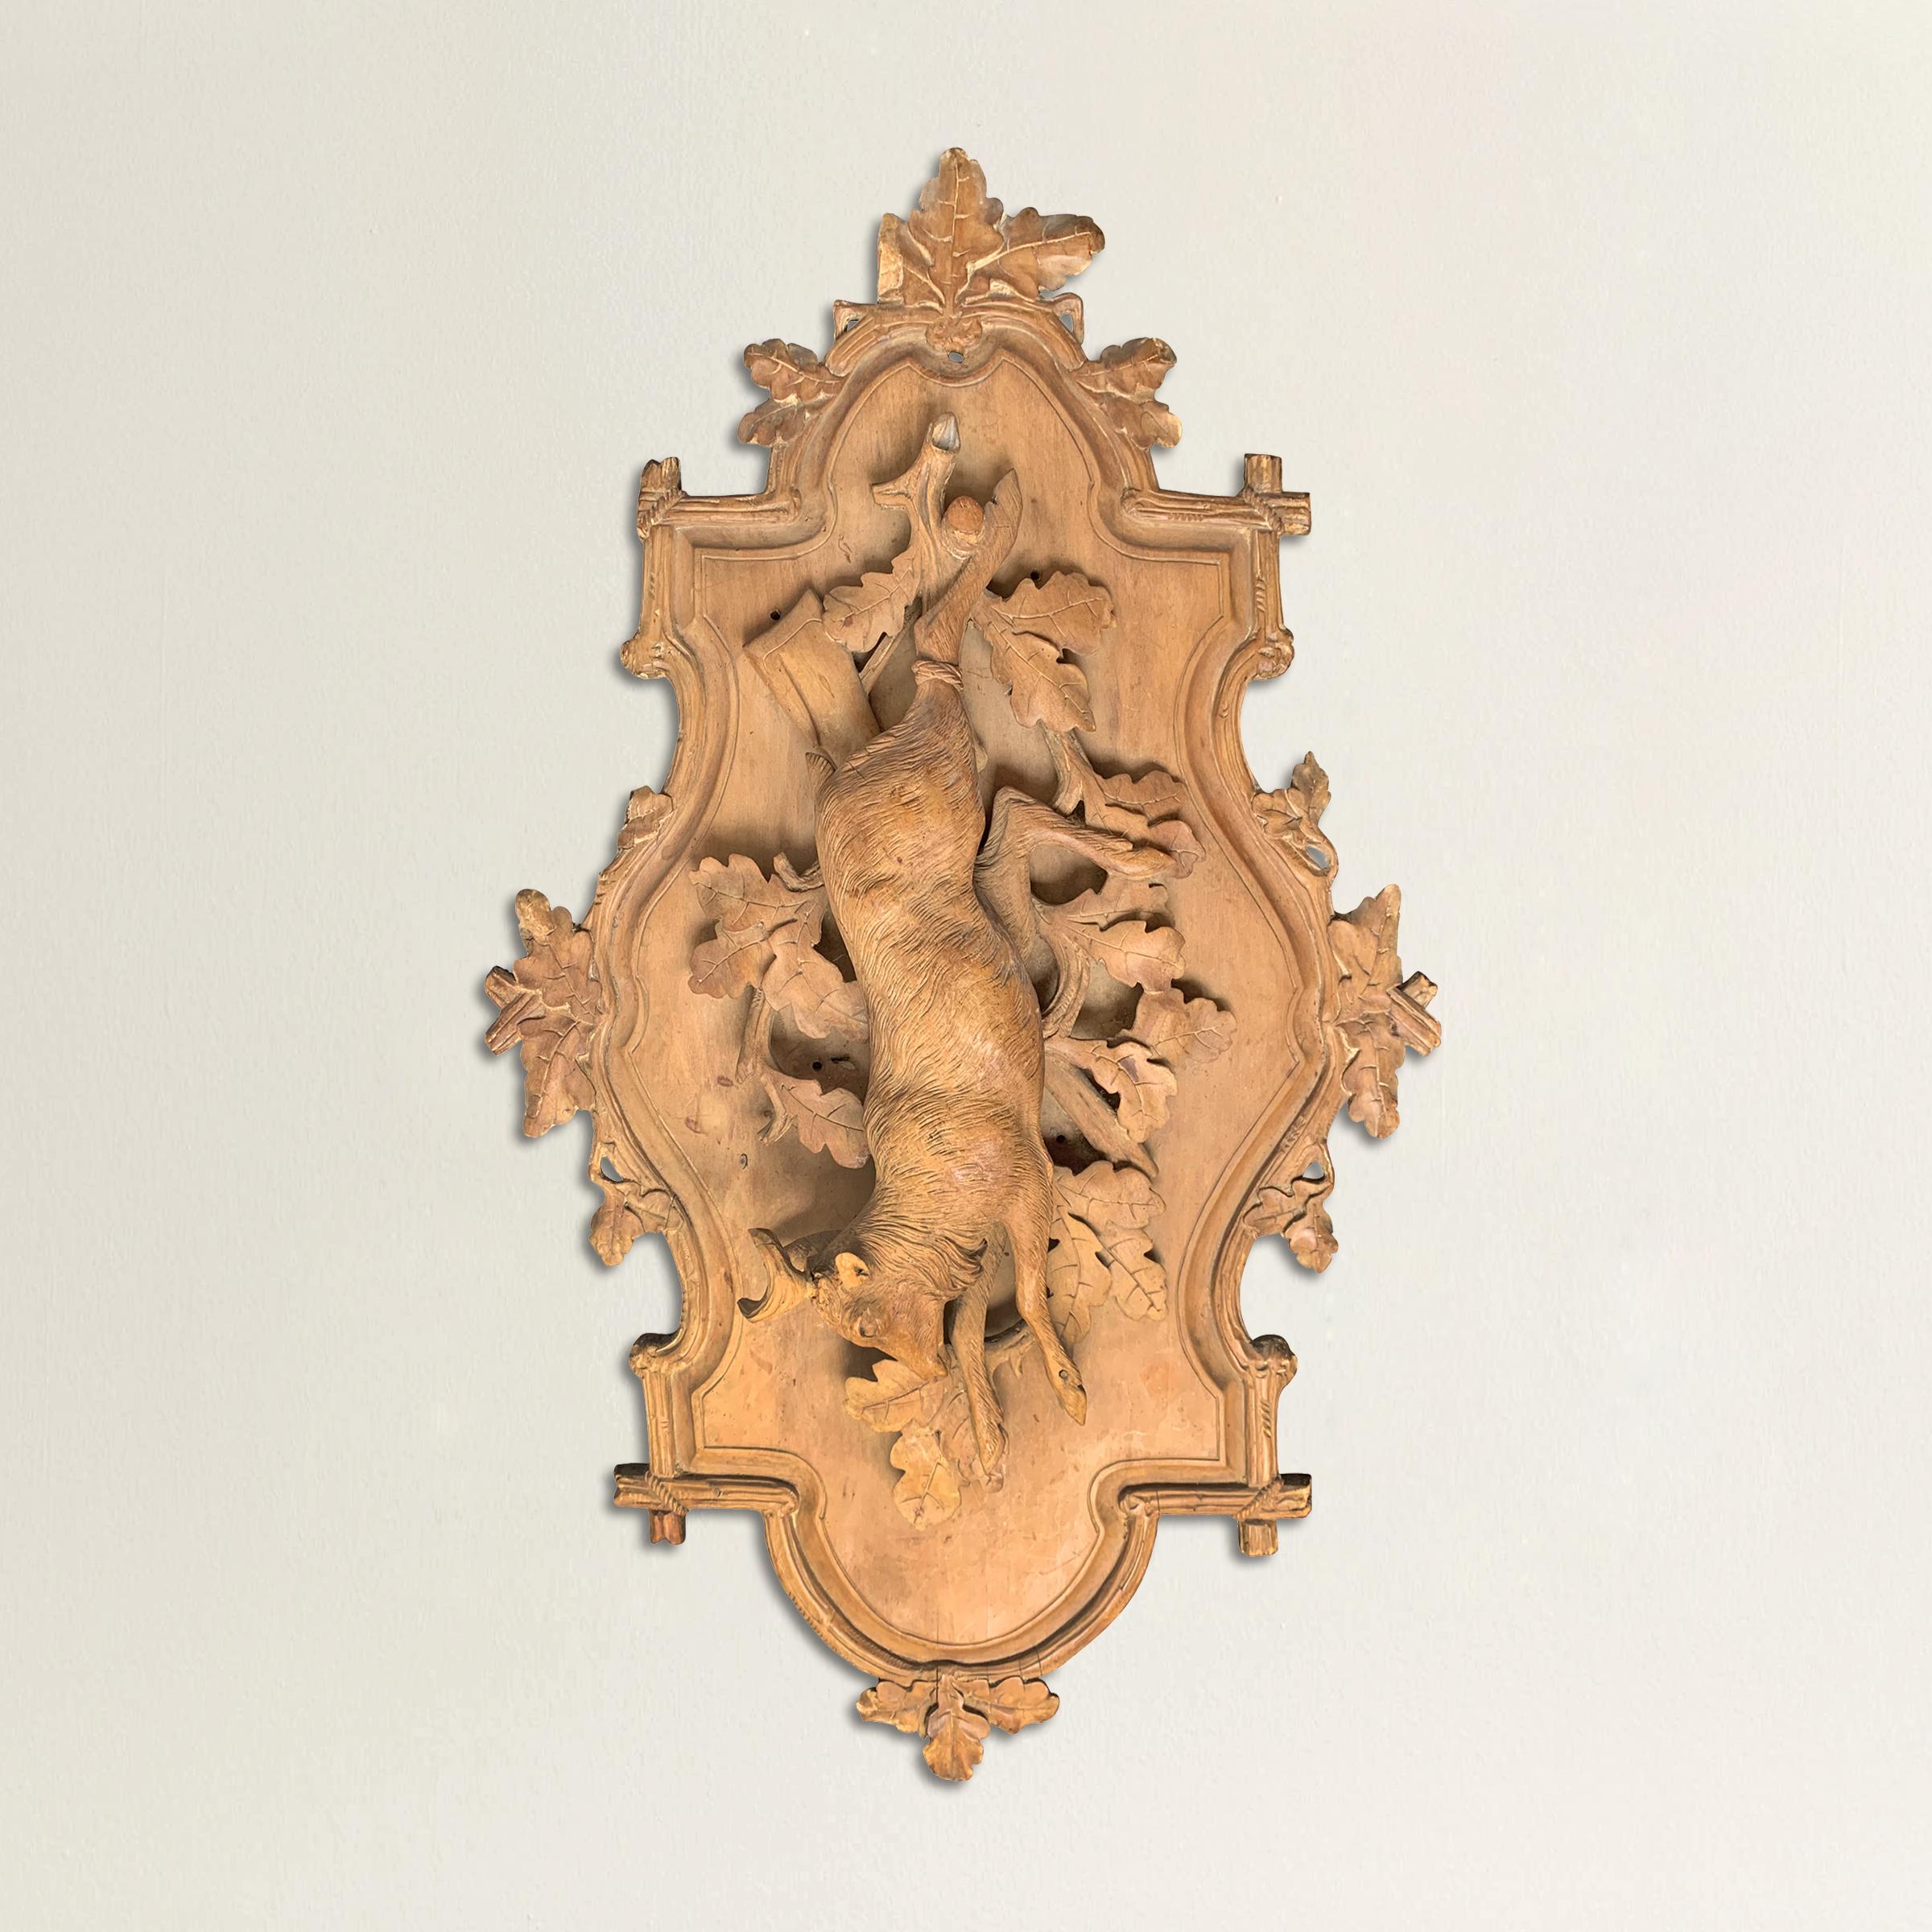 Eine fantastische bayerische handgeschnitzte Jagdtafel aus Obstholz aus dem späten 19. Jahrhundert, die ein Reh darstellt, das an einem Holzpflock über einem Eichenzweig mit Blättern hängt und an einem Brett mit einem faux-bois geschnitzten Rahmen